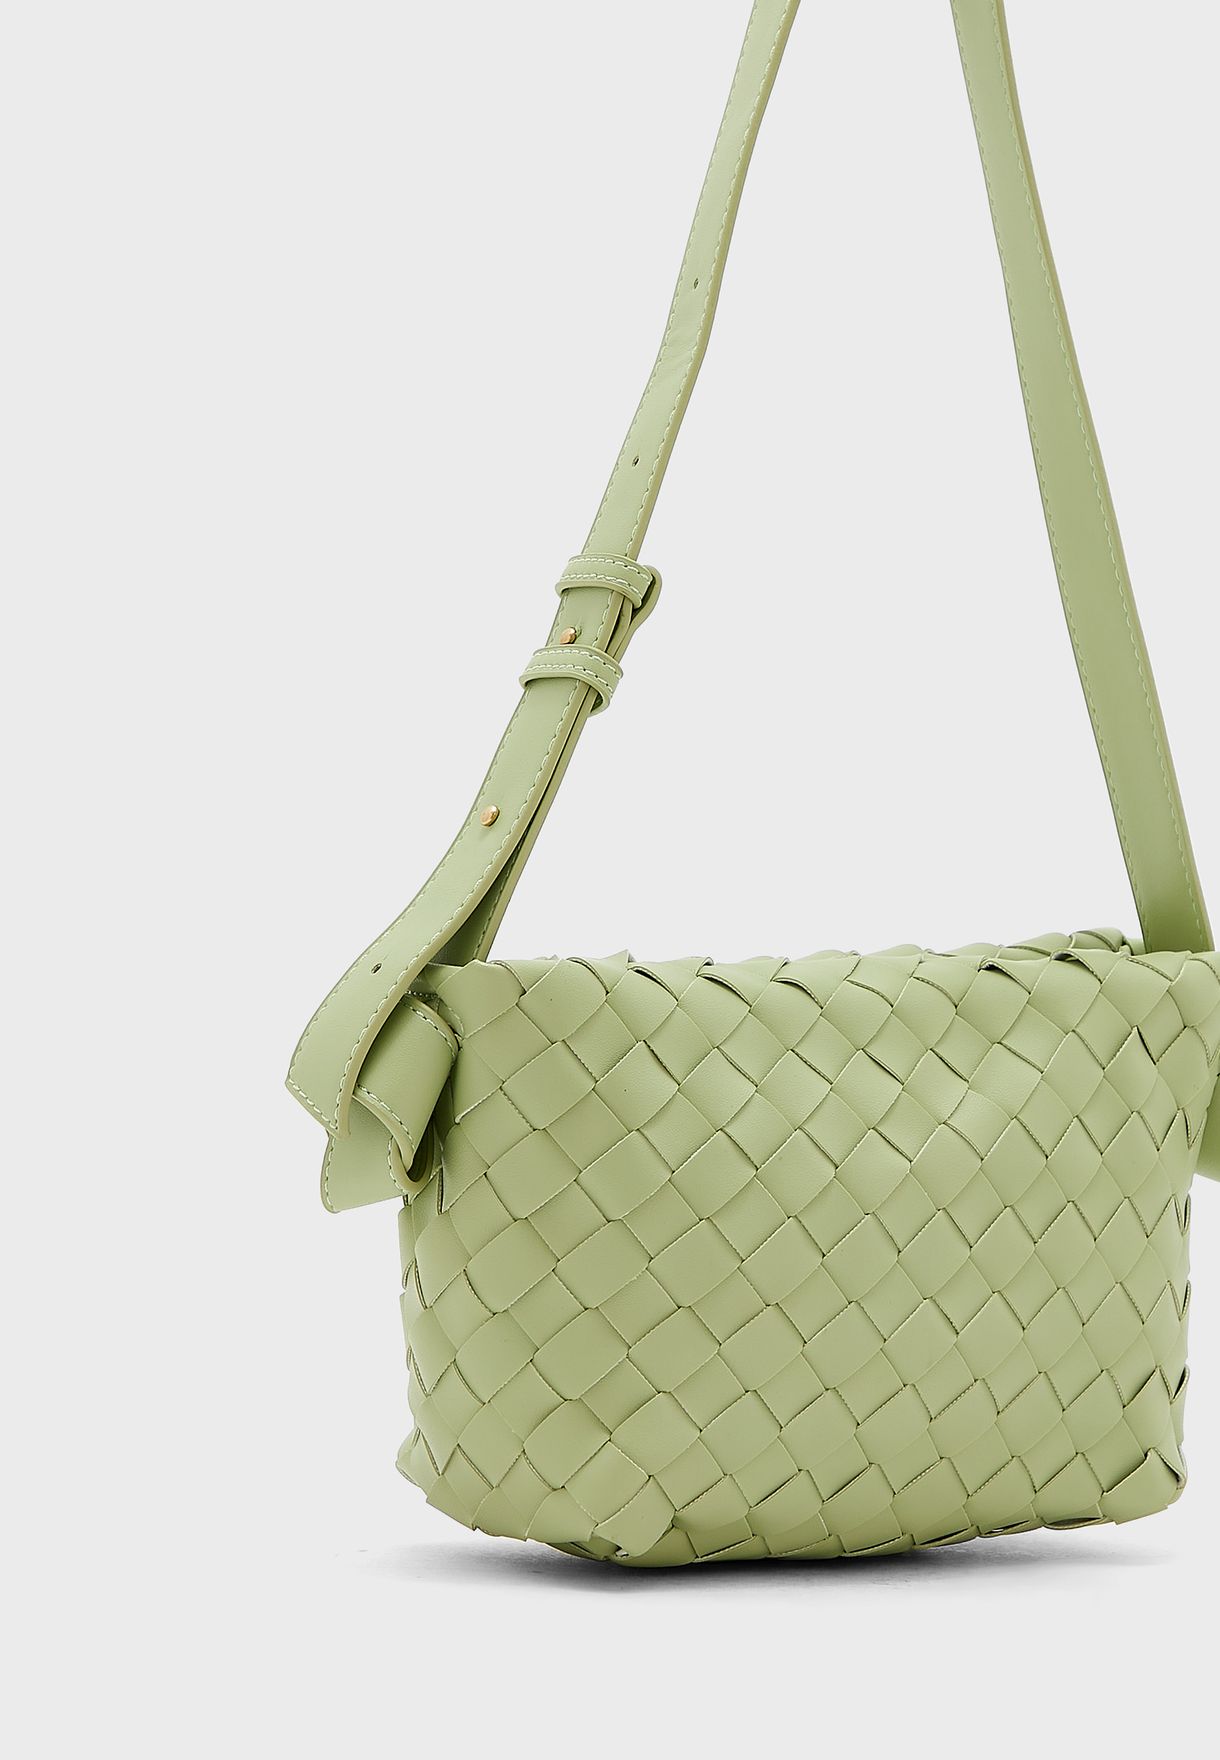 Weave Handbag With Shoulder Strap